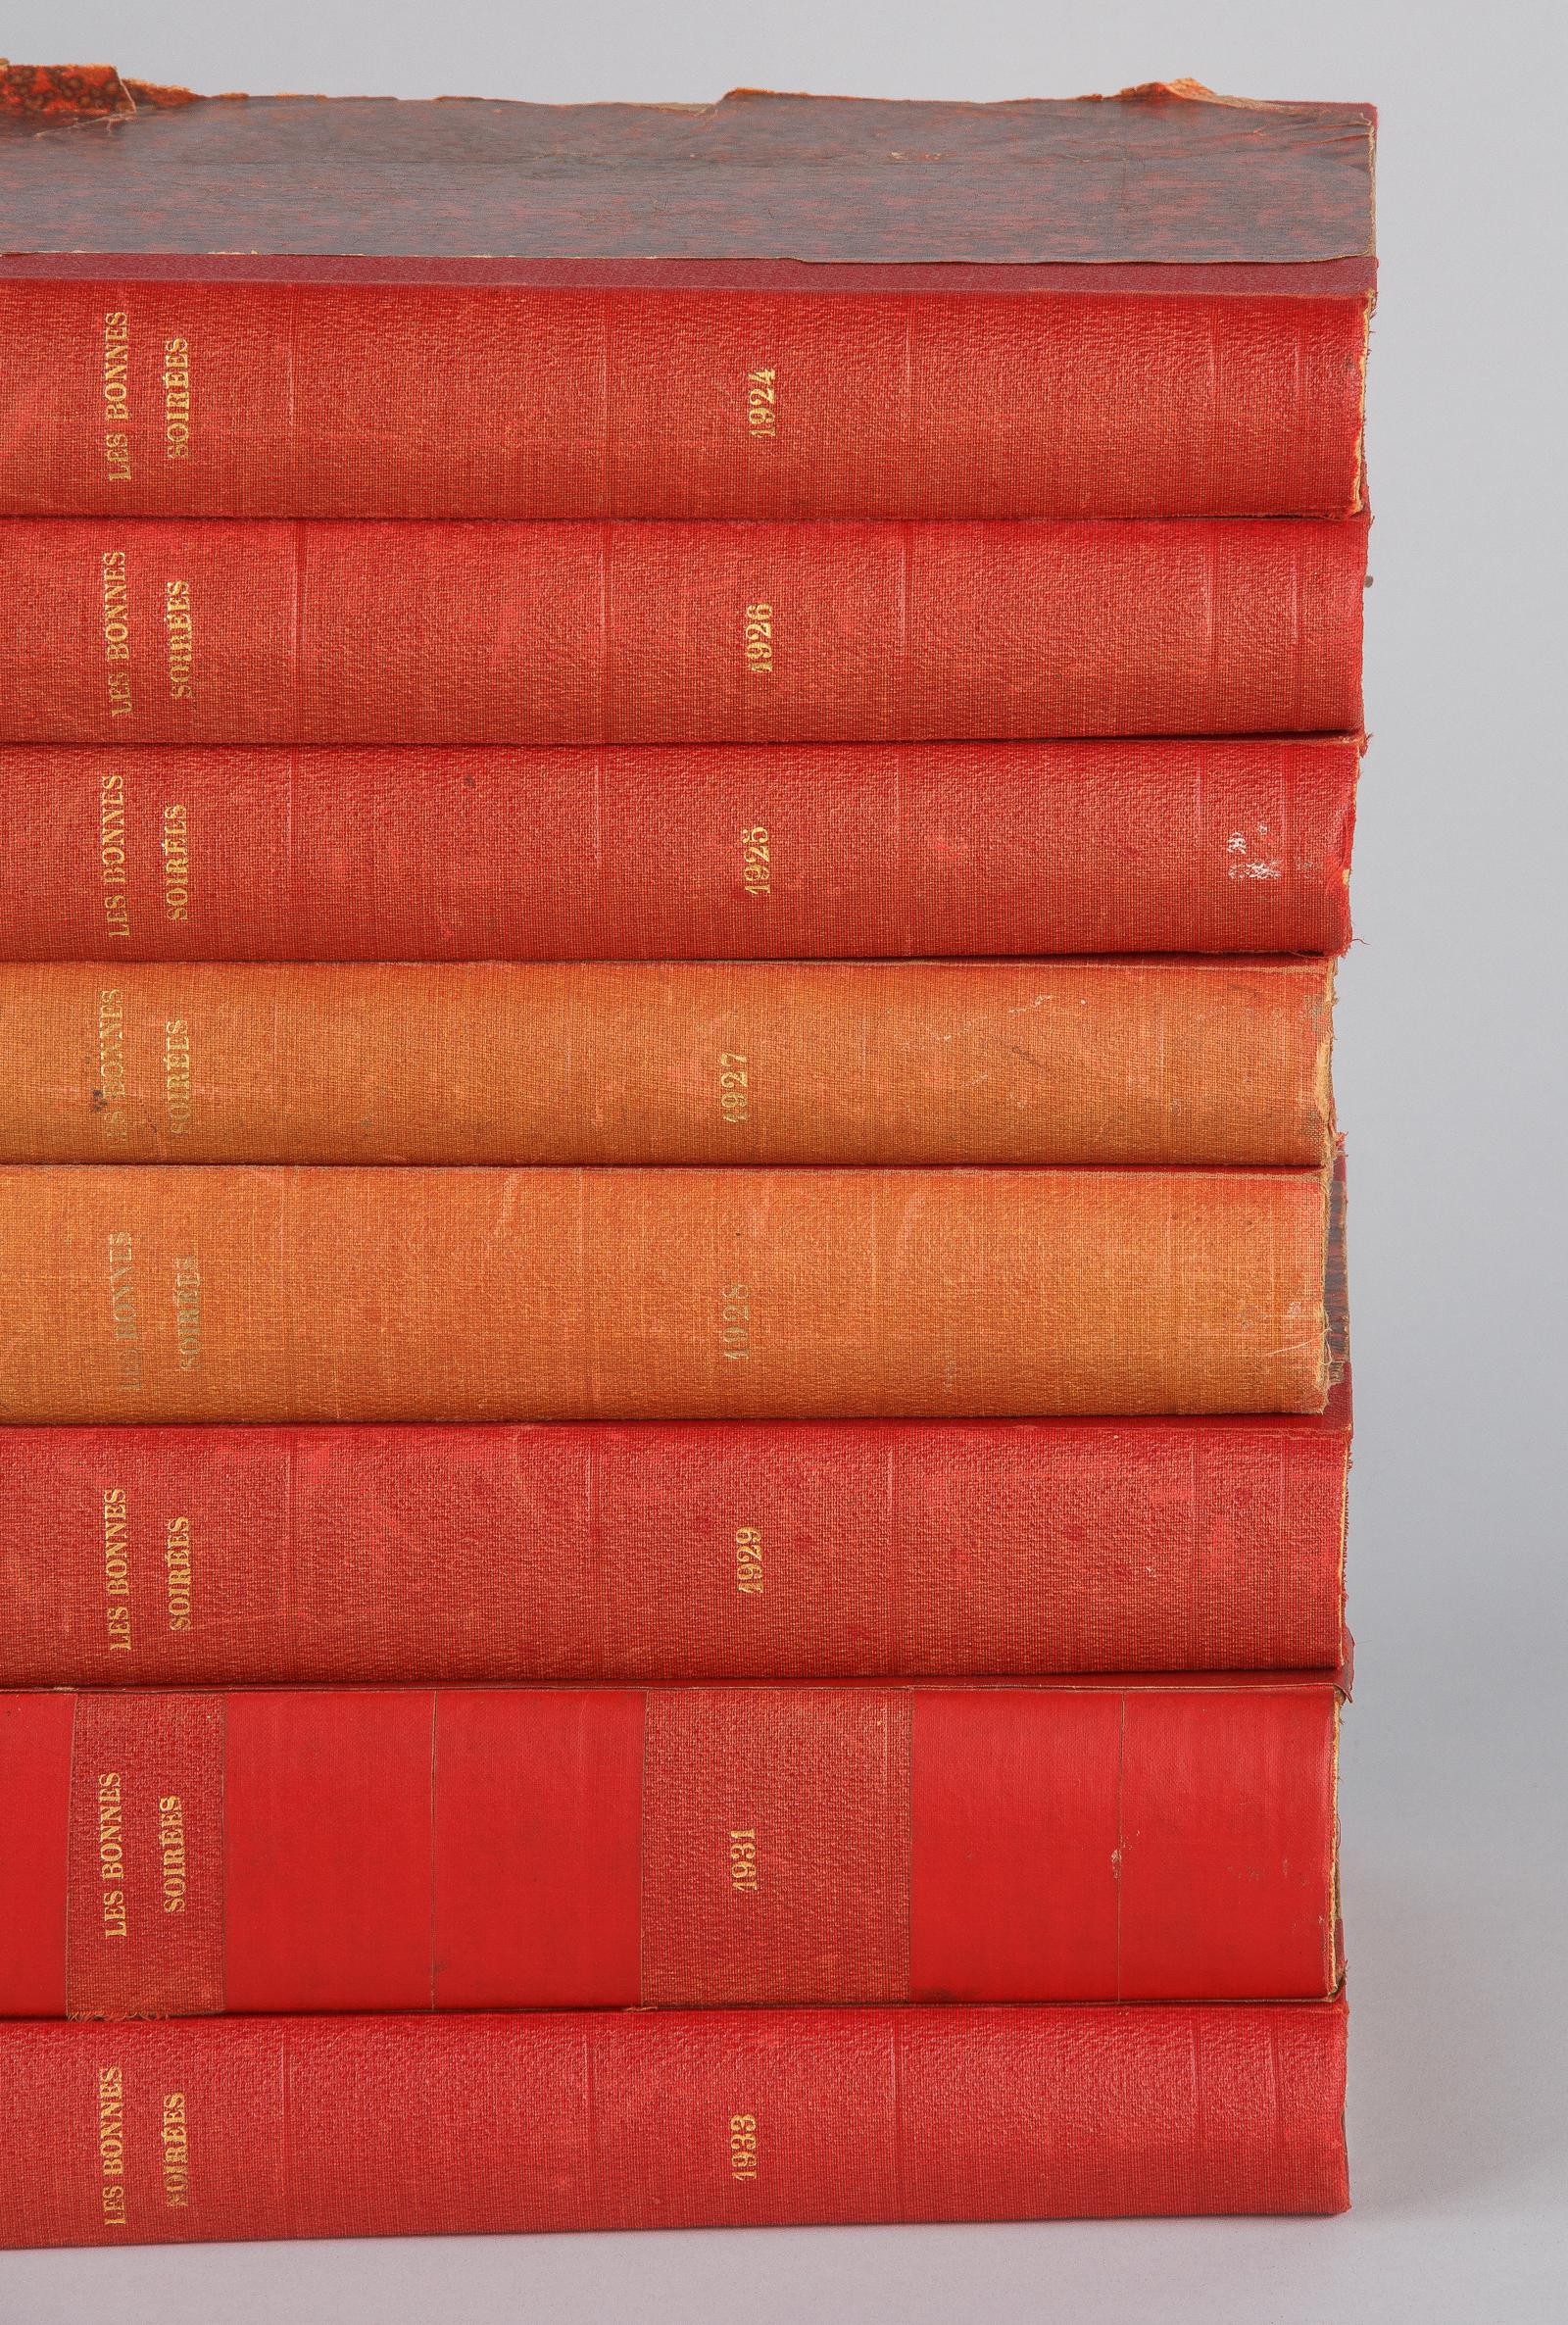 Hard Bound Books-Les Bonnes Soirees, Belgium, 1924-1933 For Sale 11